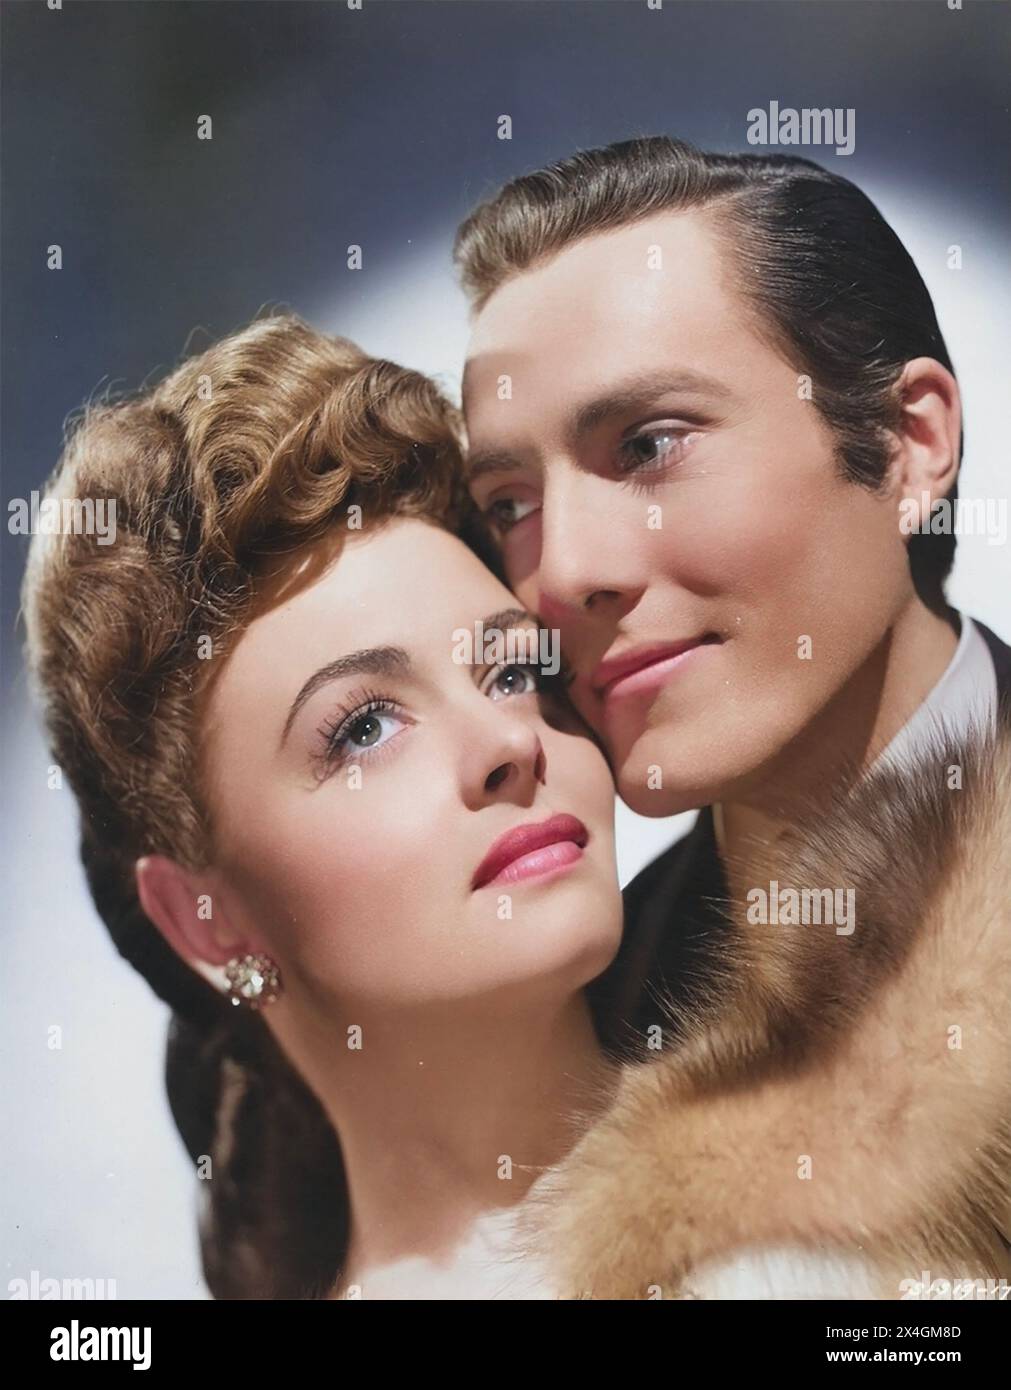 L'IMAGE DE DORIAN GRAY 1945 MGM film avec Donna Reed dans le rôle de Gladys Hallward et Hurd Hatfield dans le rôle de Dorian Gray Banque D'Images